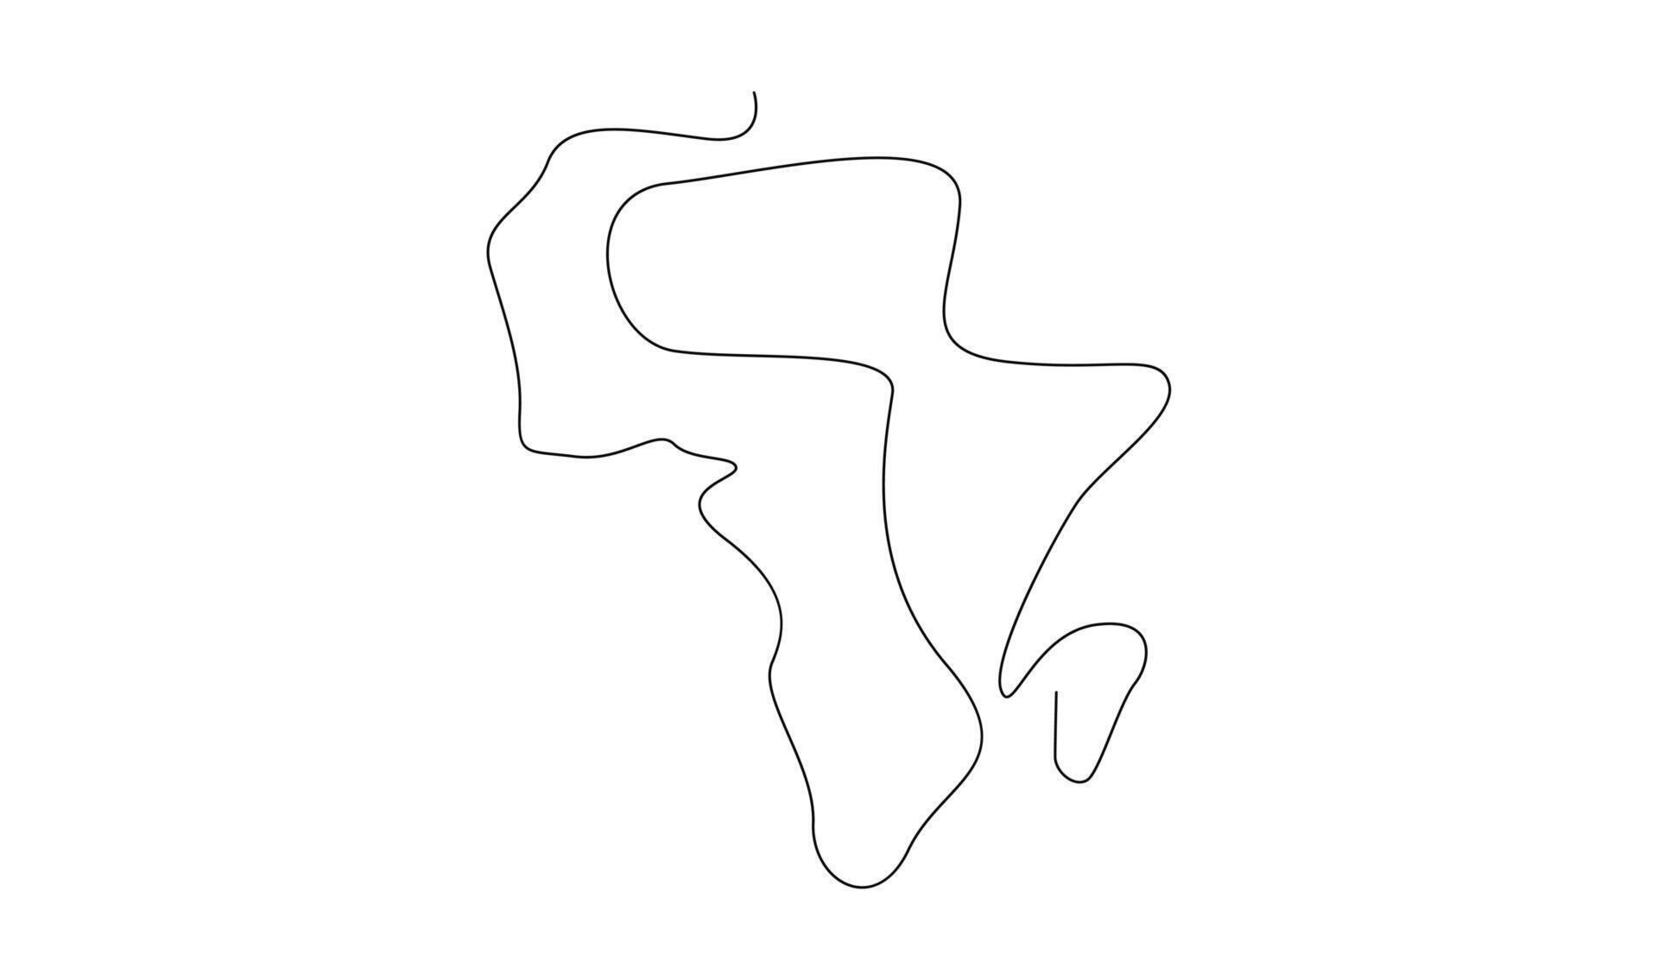 enda kontinuerlig linje konst Karta av afrika vektor